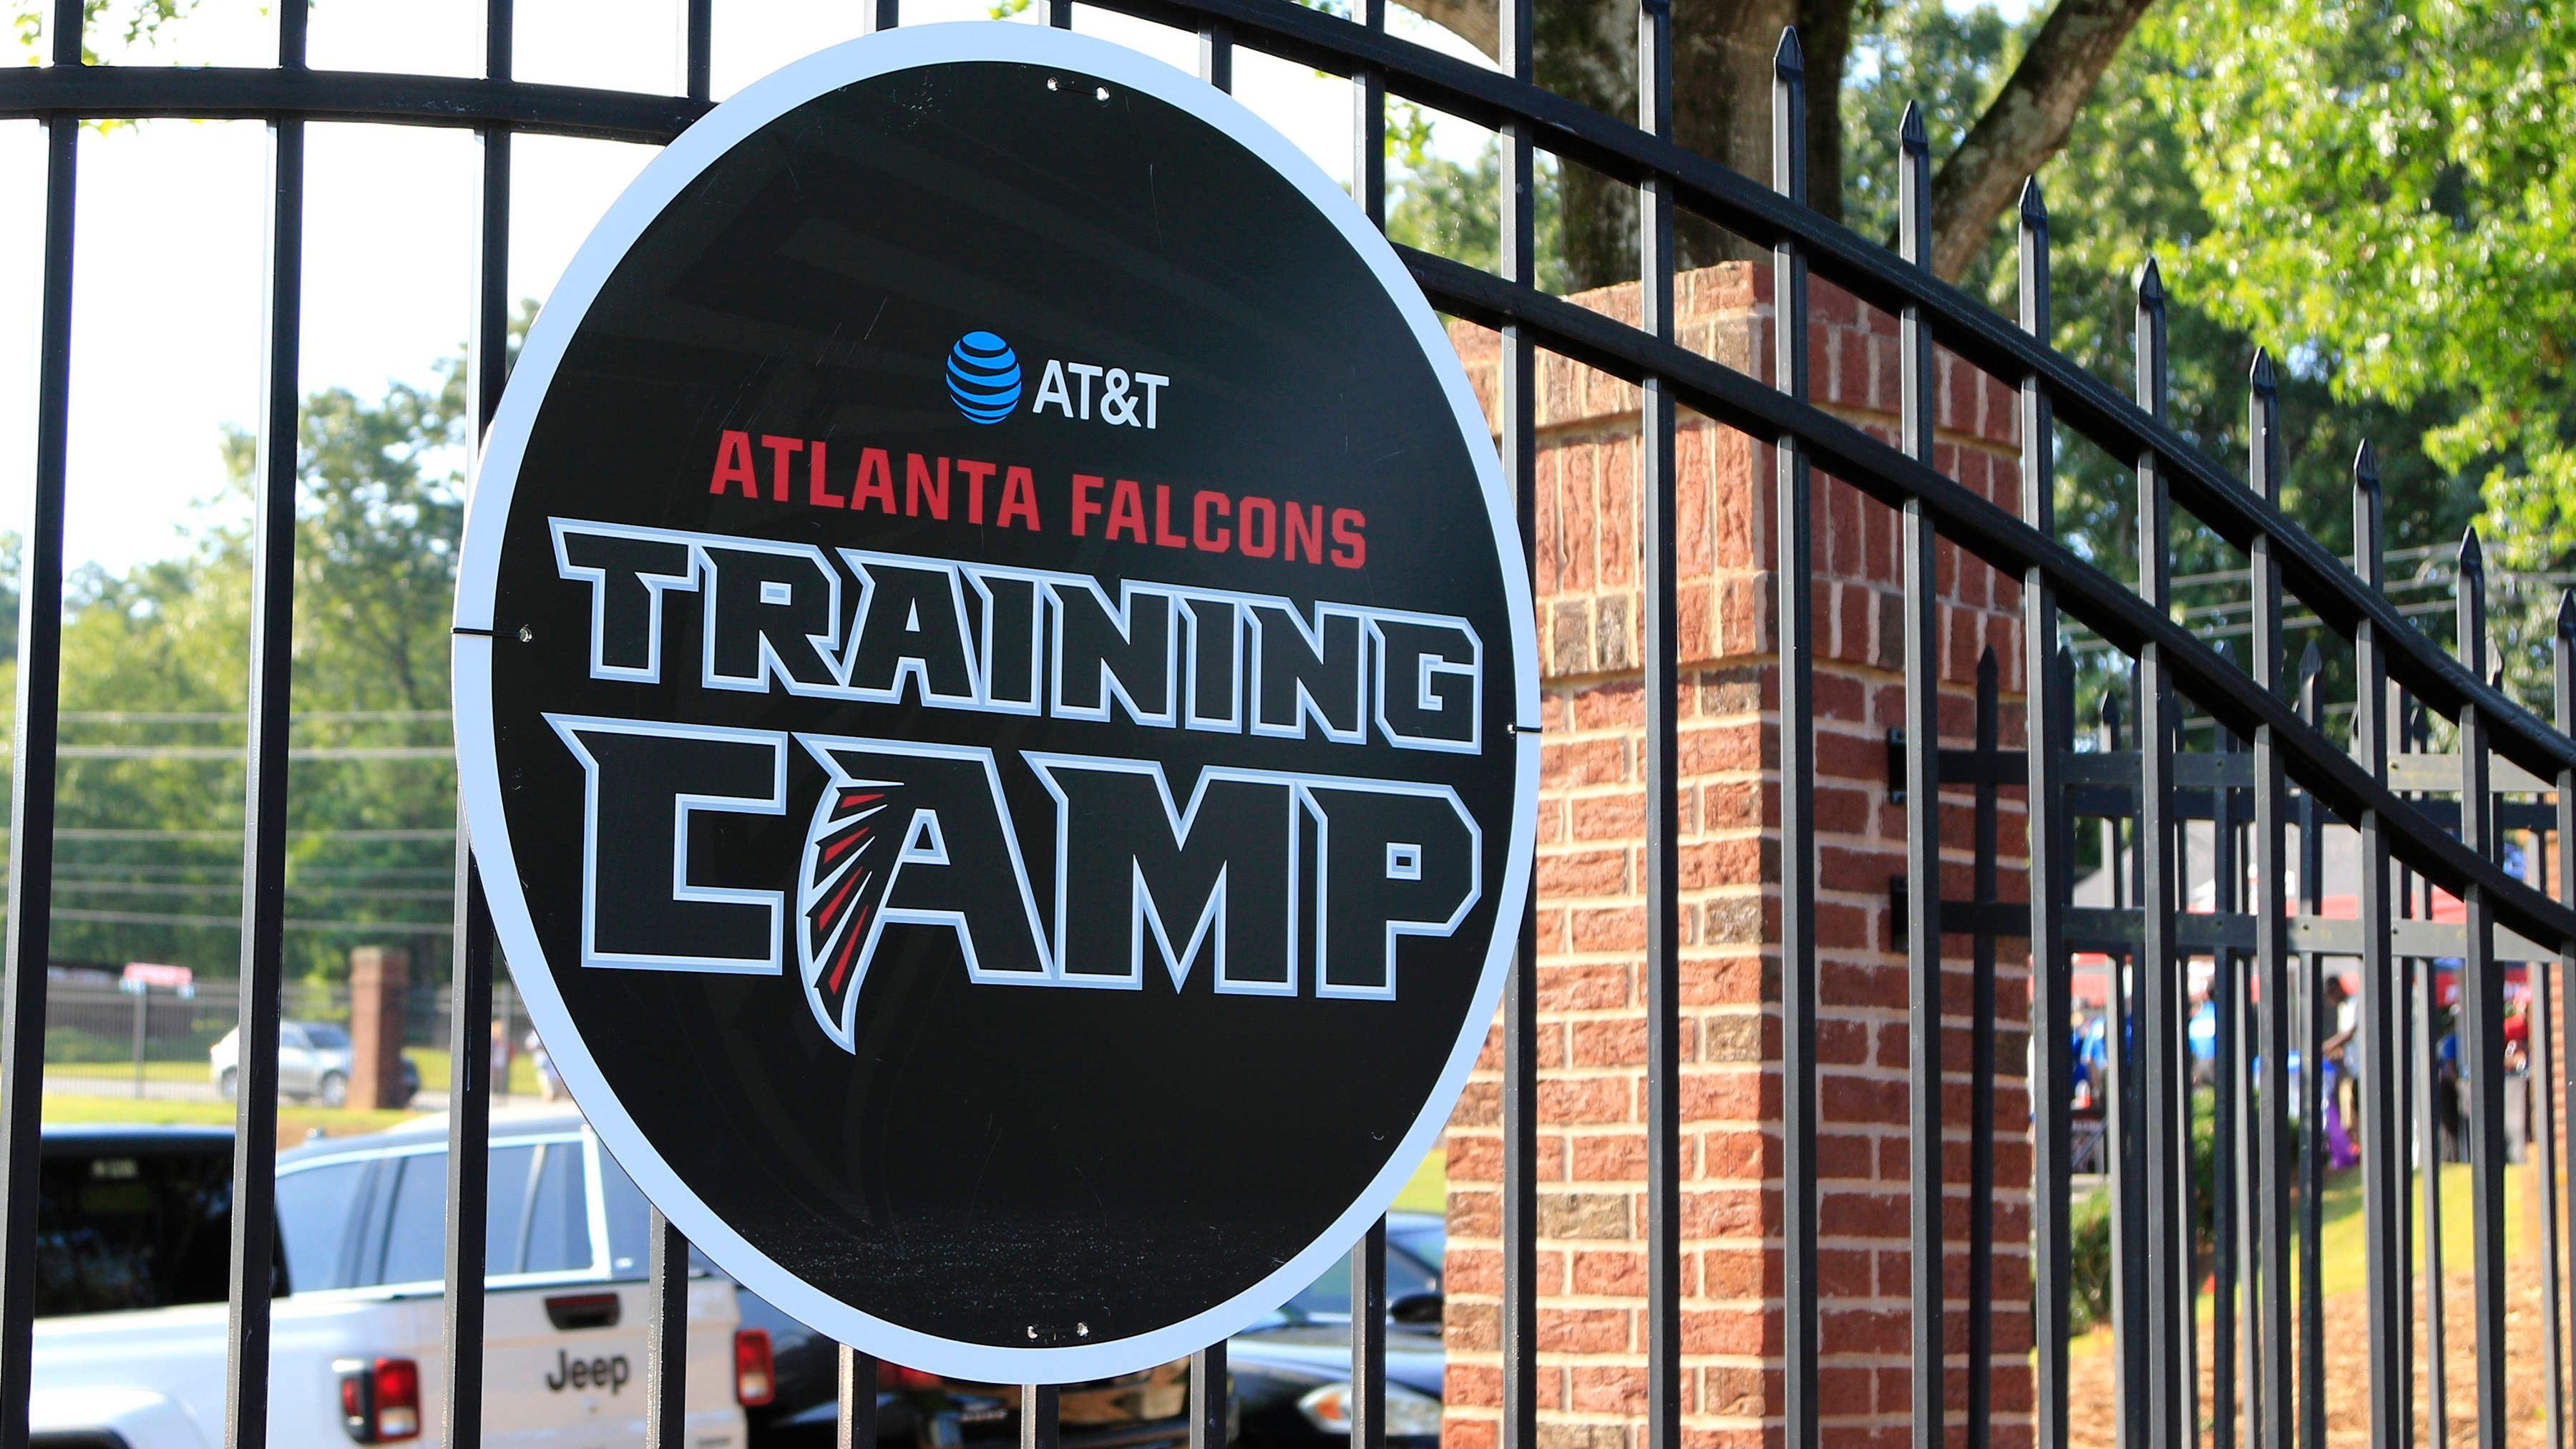 <strong>Atlanta Falcons</strong><br>Volontary Minicamp: 22. - 24. April<br>OTA Offseason Workouts: 13./14. Mai, 16. Mai, 20./21. Mai, 23. Mai, 3./4. Juni, 6. Juni<br>Mandatory Minicamp: 10. - 12. Juni